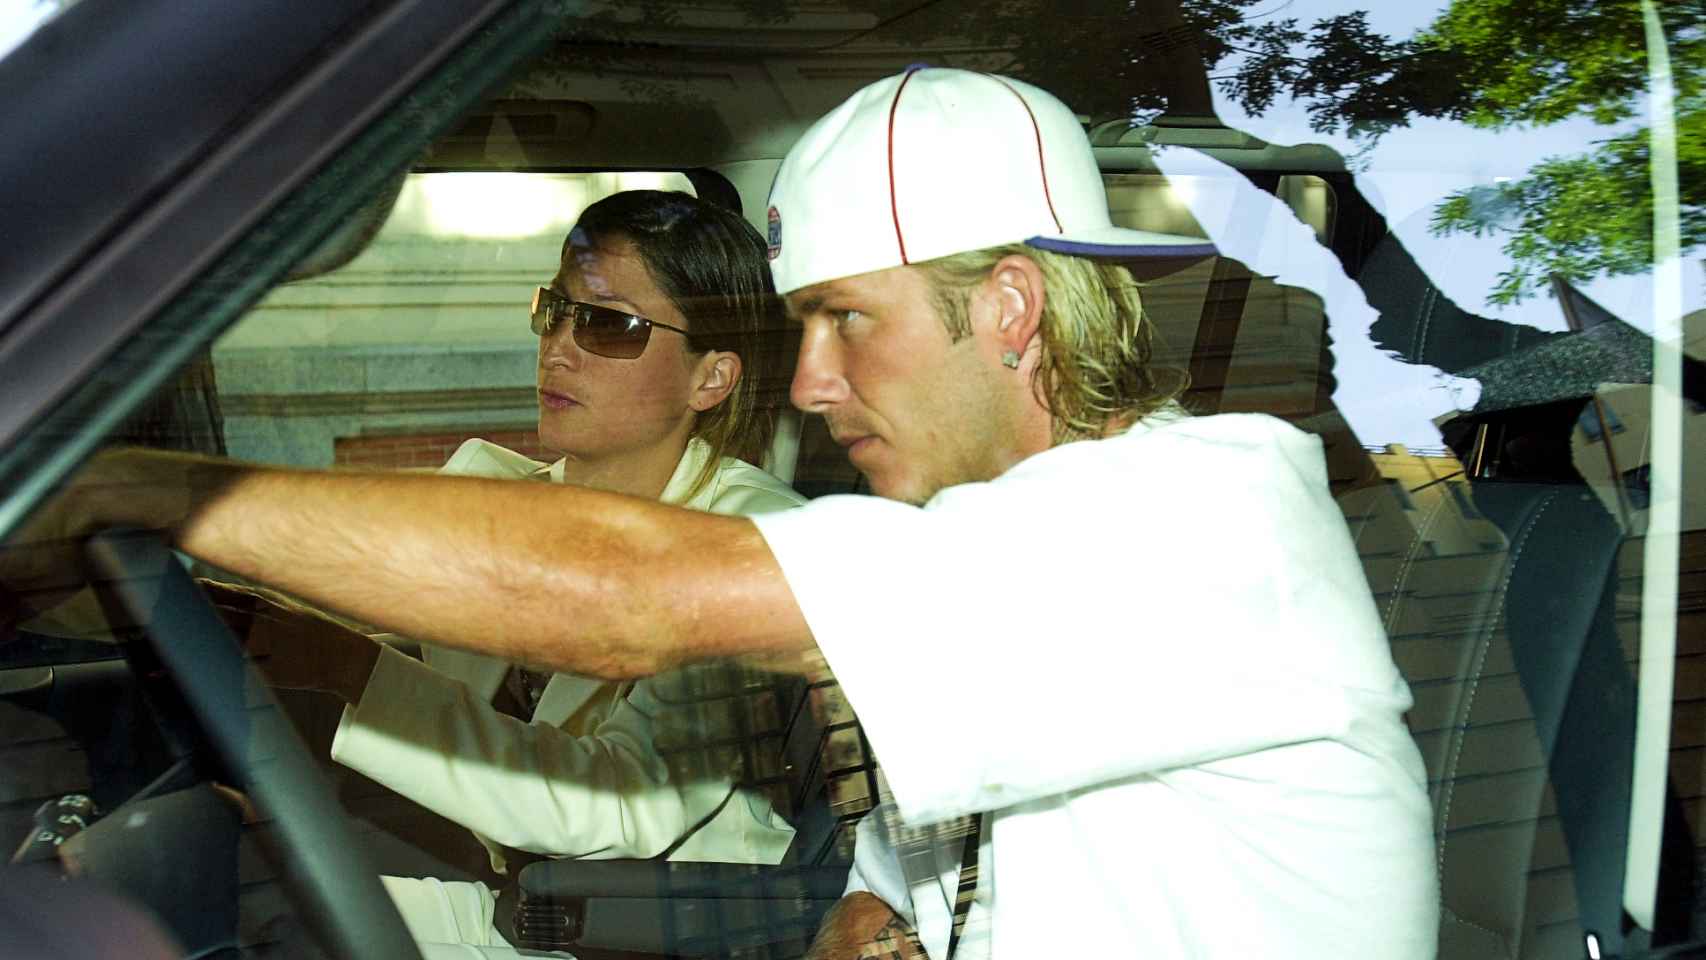 Rebecca, de copiloto en el coche junto a David Beckham.